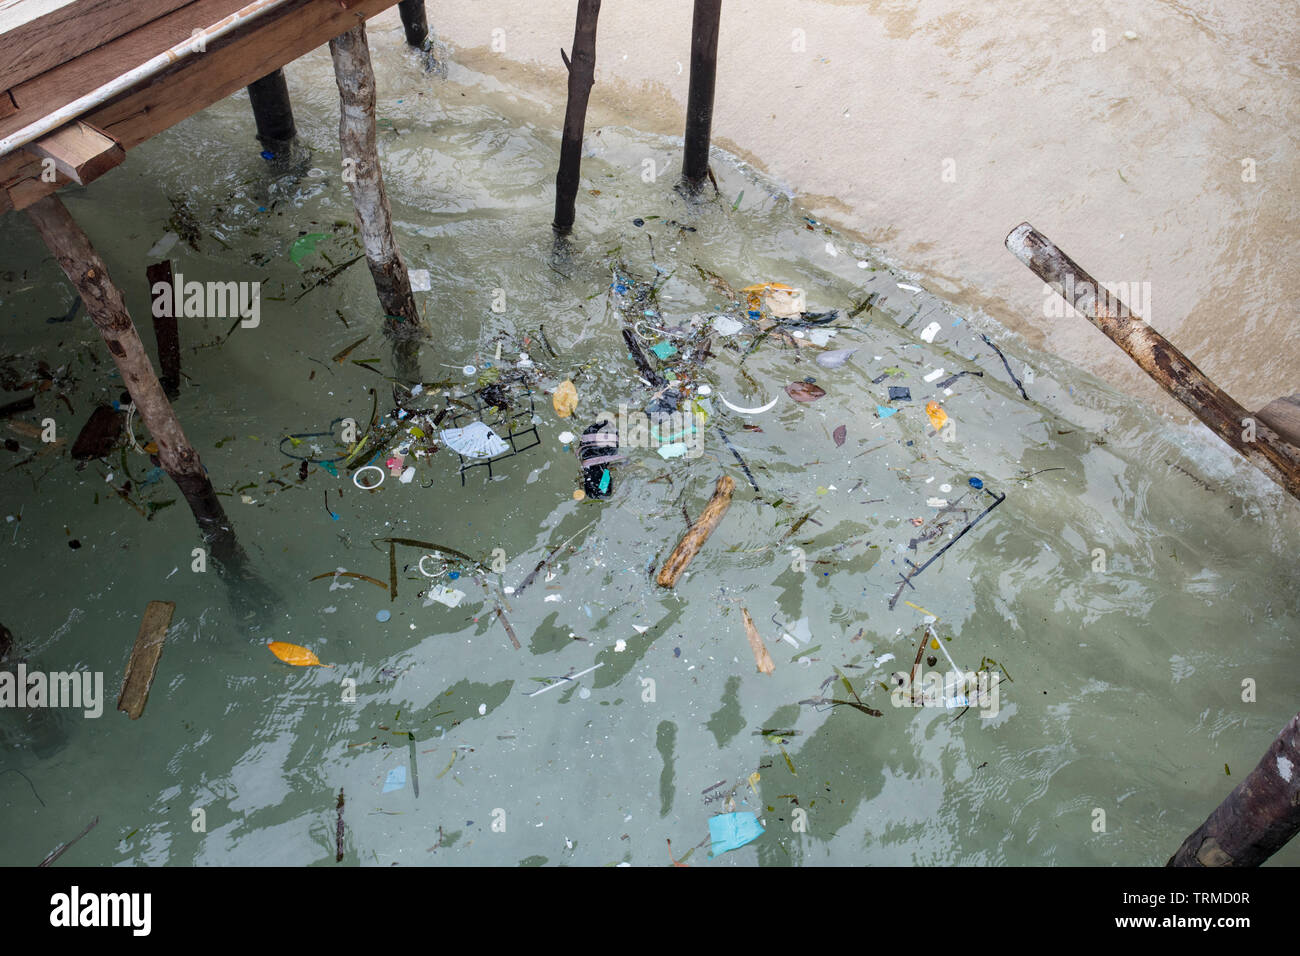 Marine plastik Müll in die durch Wind und Wellen an einem windigen Tag brachte Manyaifun auf der Insel Batang Pele, West Waigeo, Raja Ampat, Indon Stockfoto